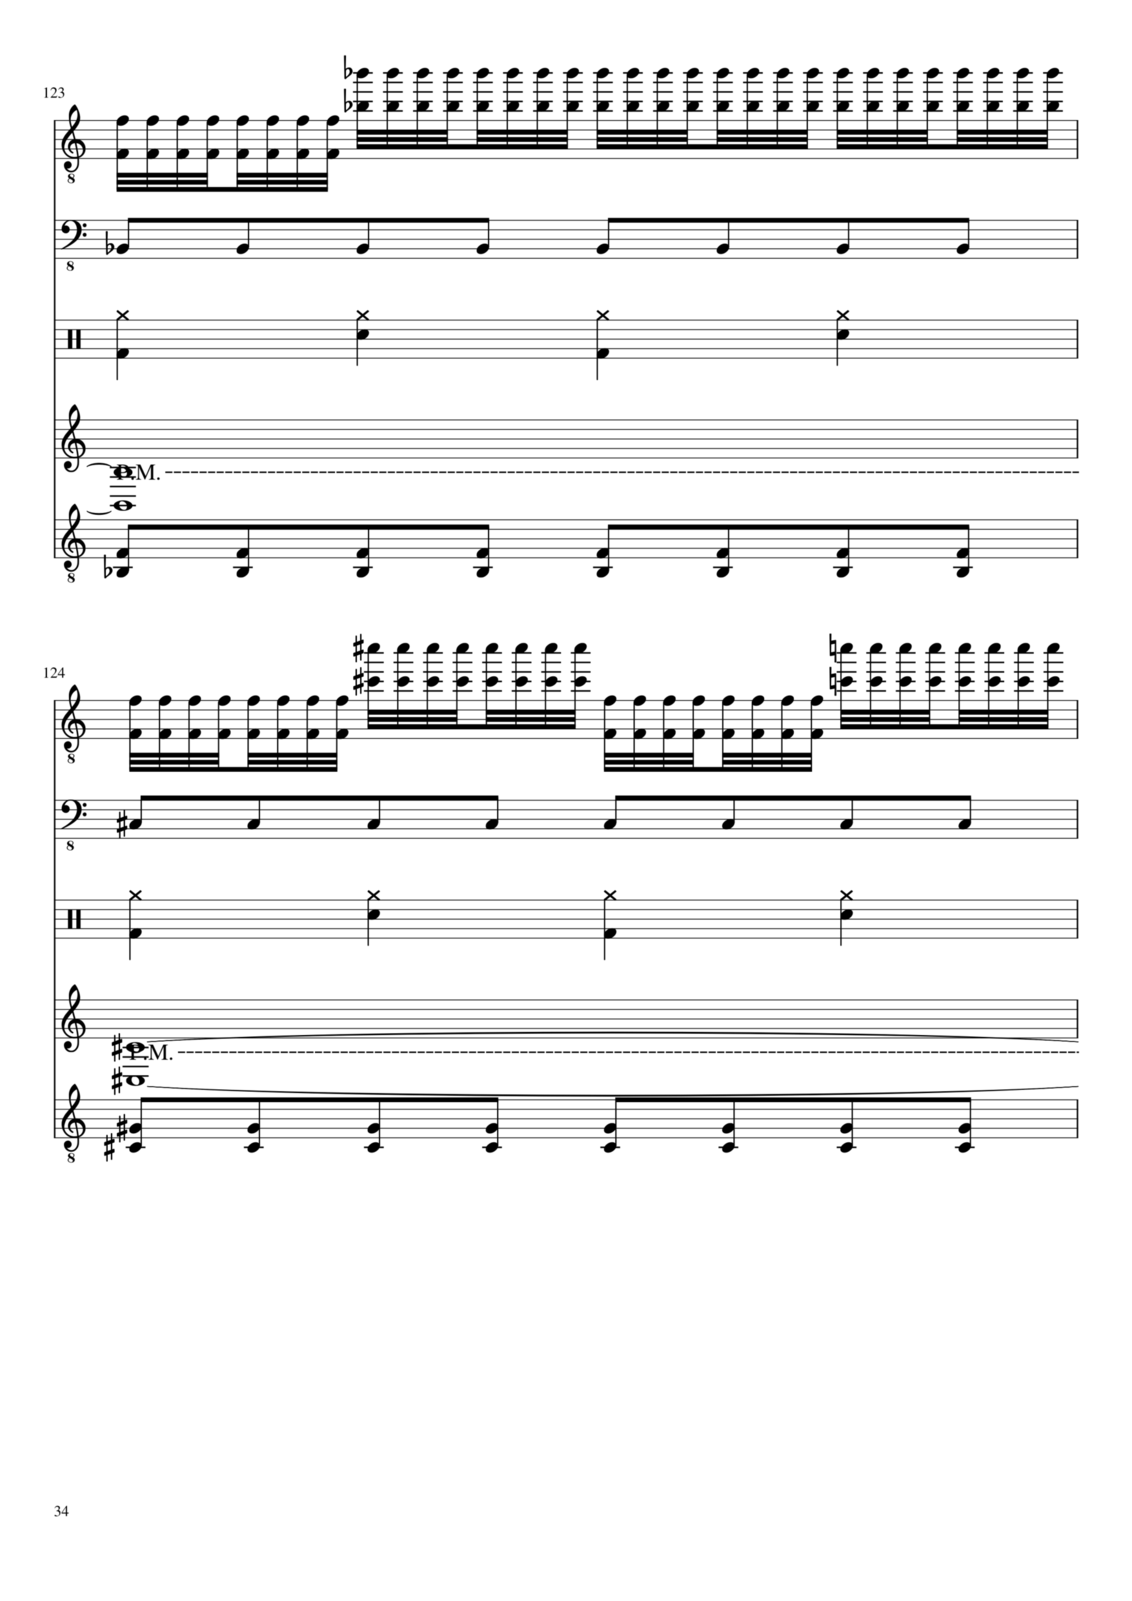 Vechnaya prizrachnaya vstrechnaya slide, Image 34